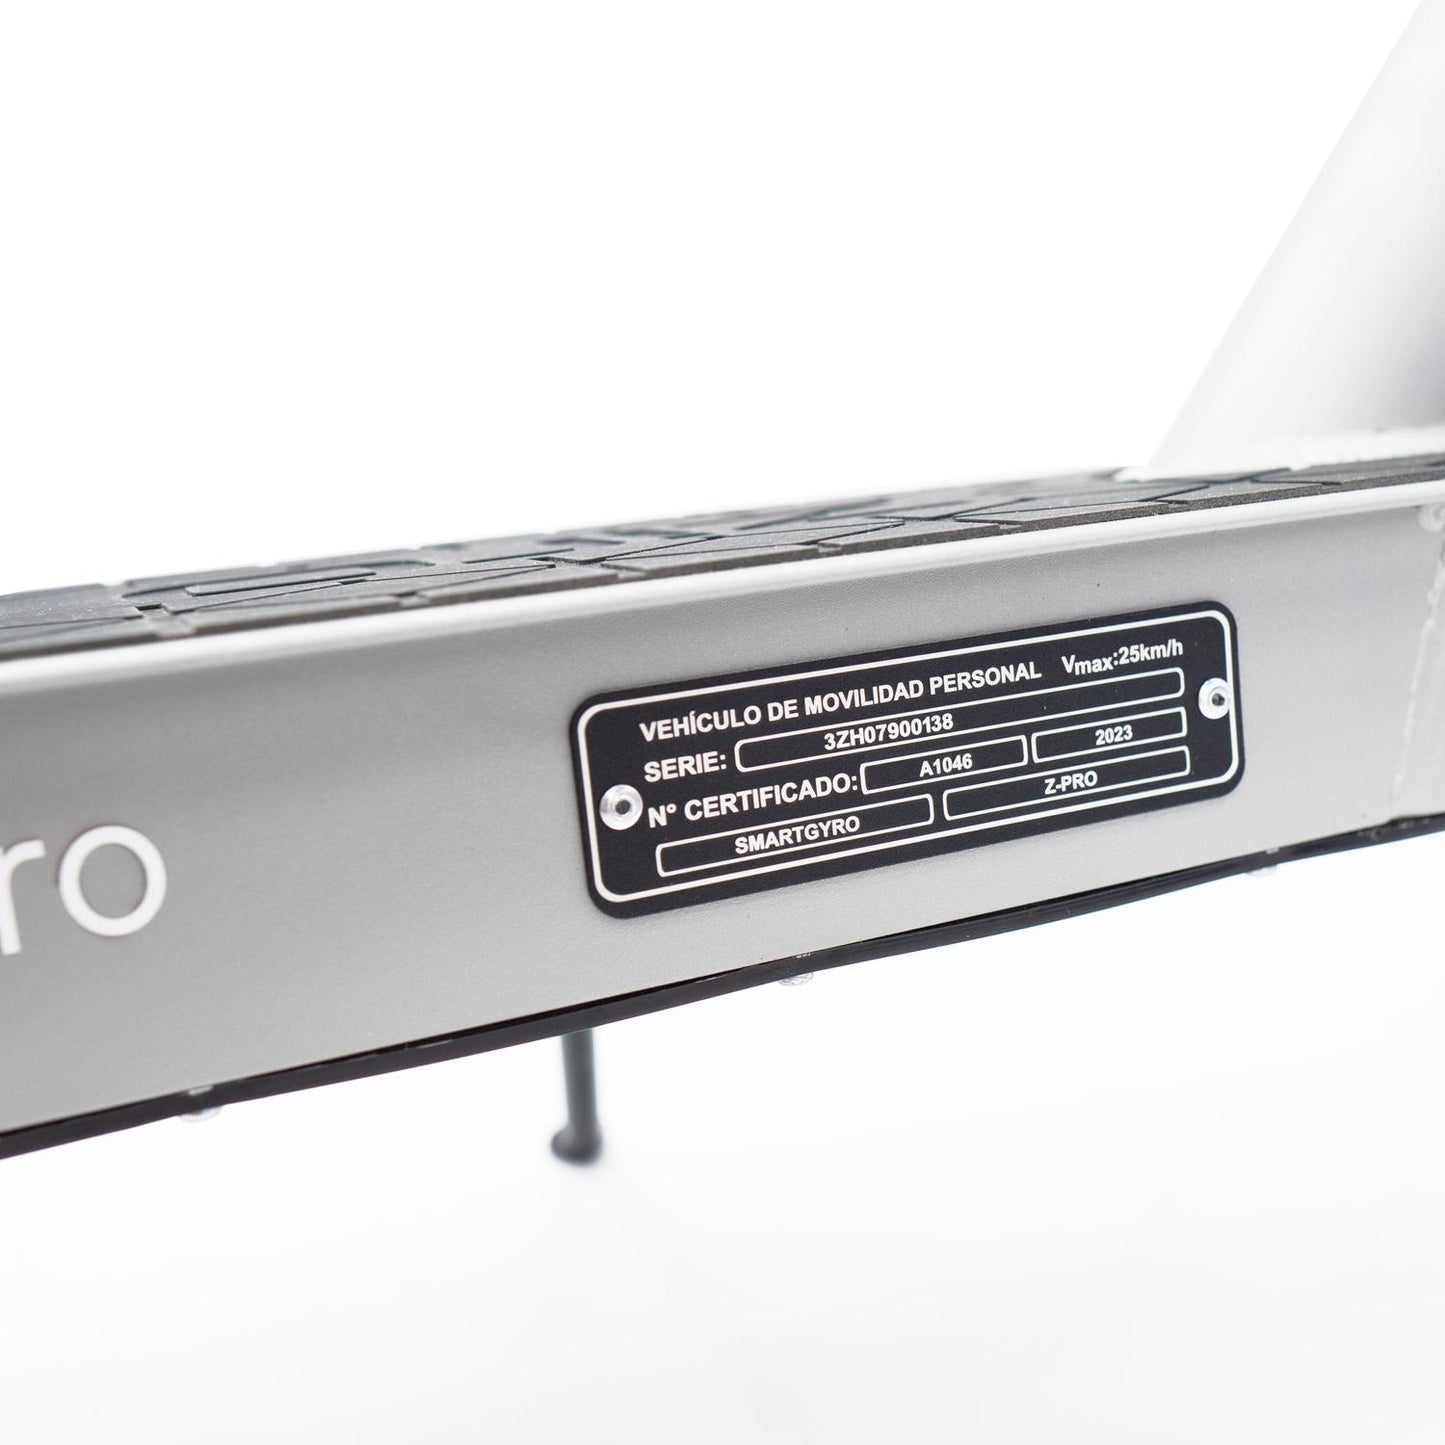 Patinete eléctrico smartGyro Z-Pro Silver Certificado DGT